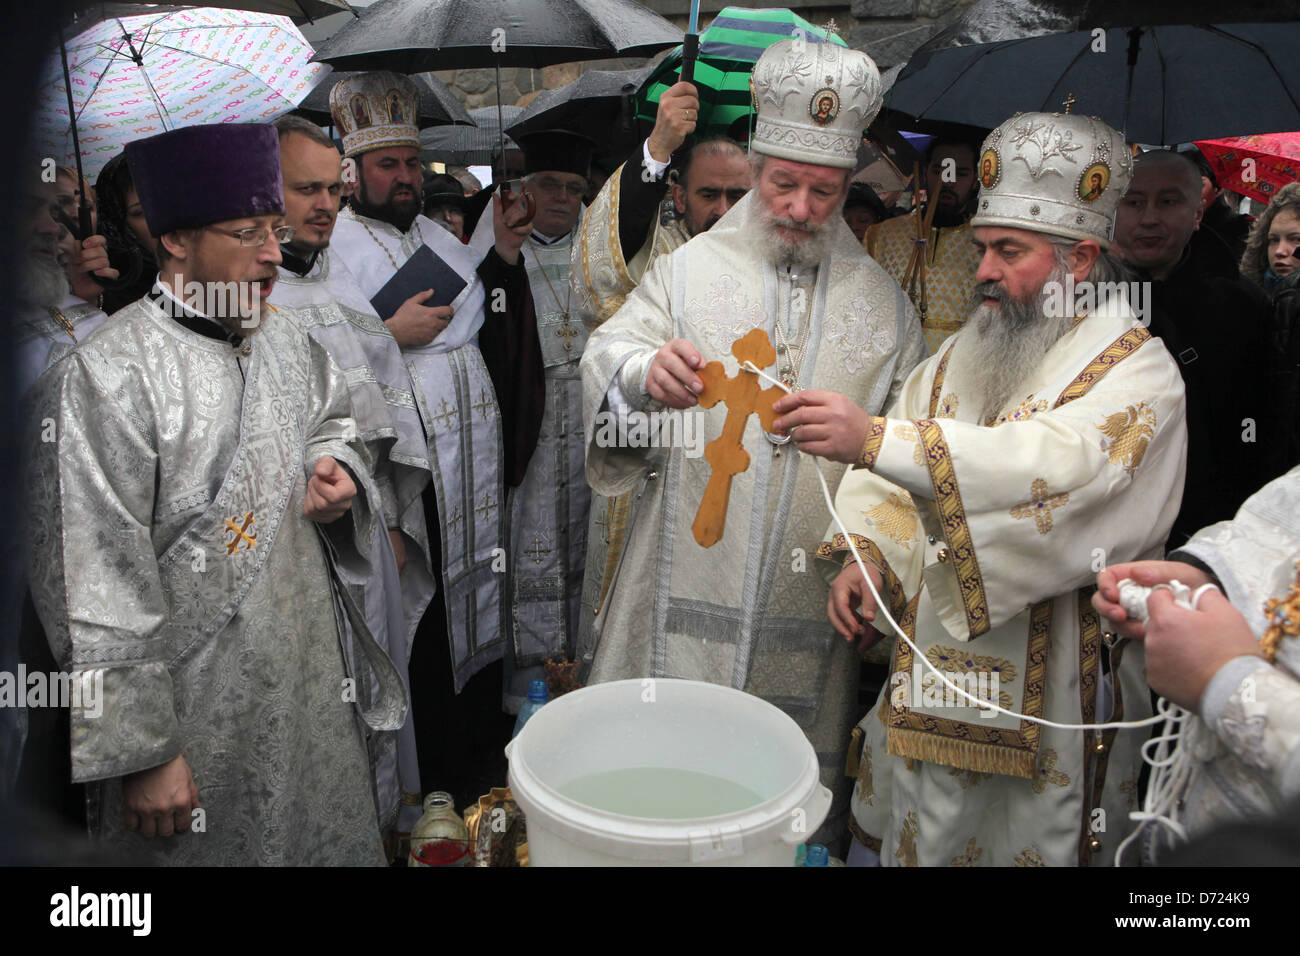 Christopher metropolita ortodoxo consagra la Epifanía, el agua en el terraplén del río Moldava en Praga. Foto de stock